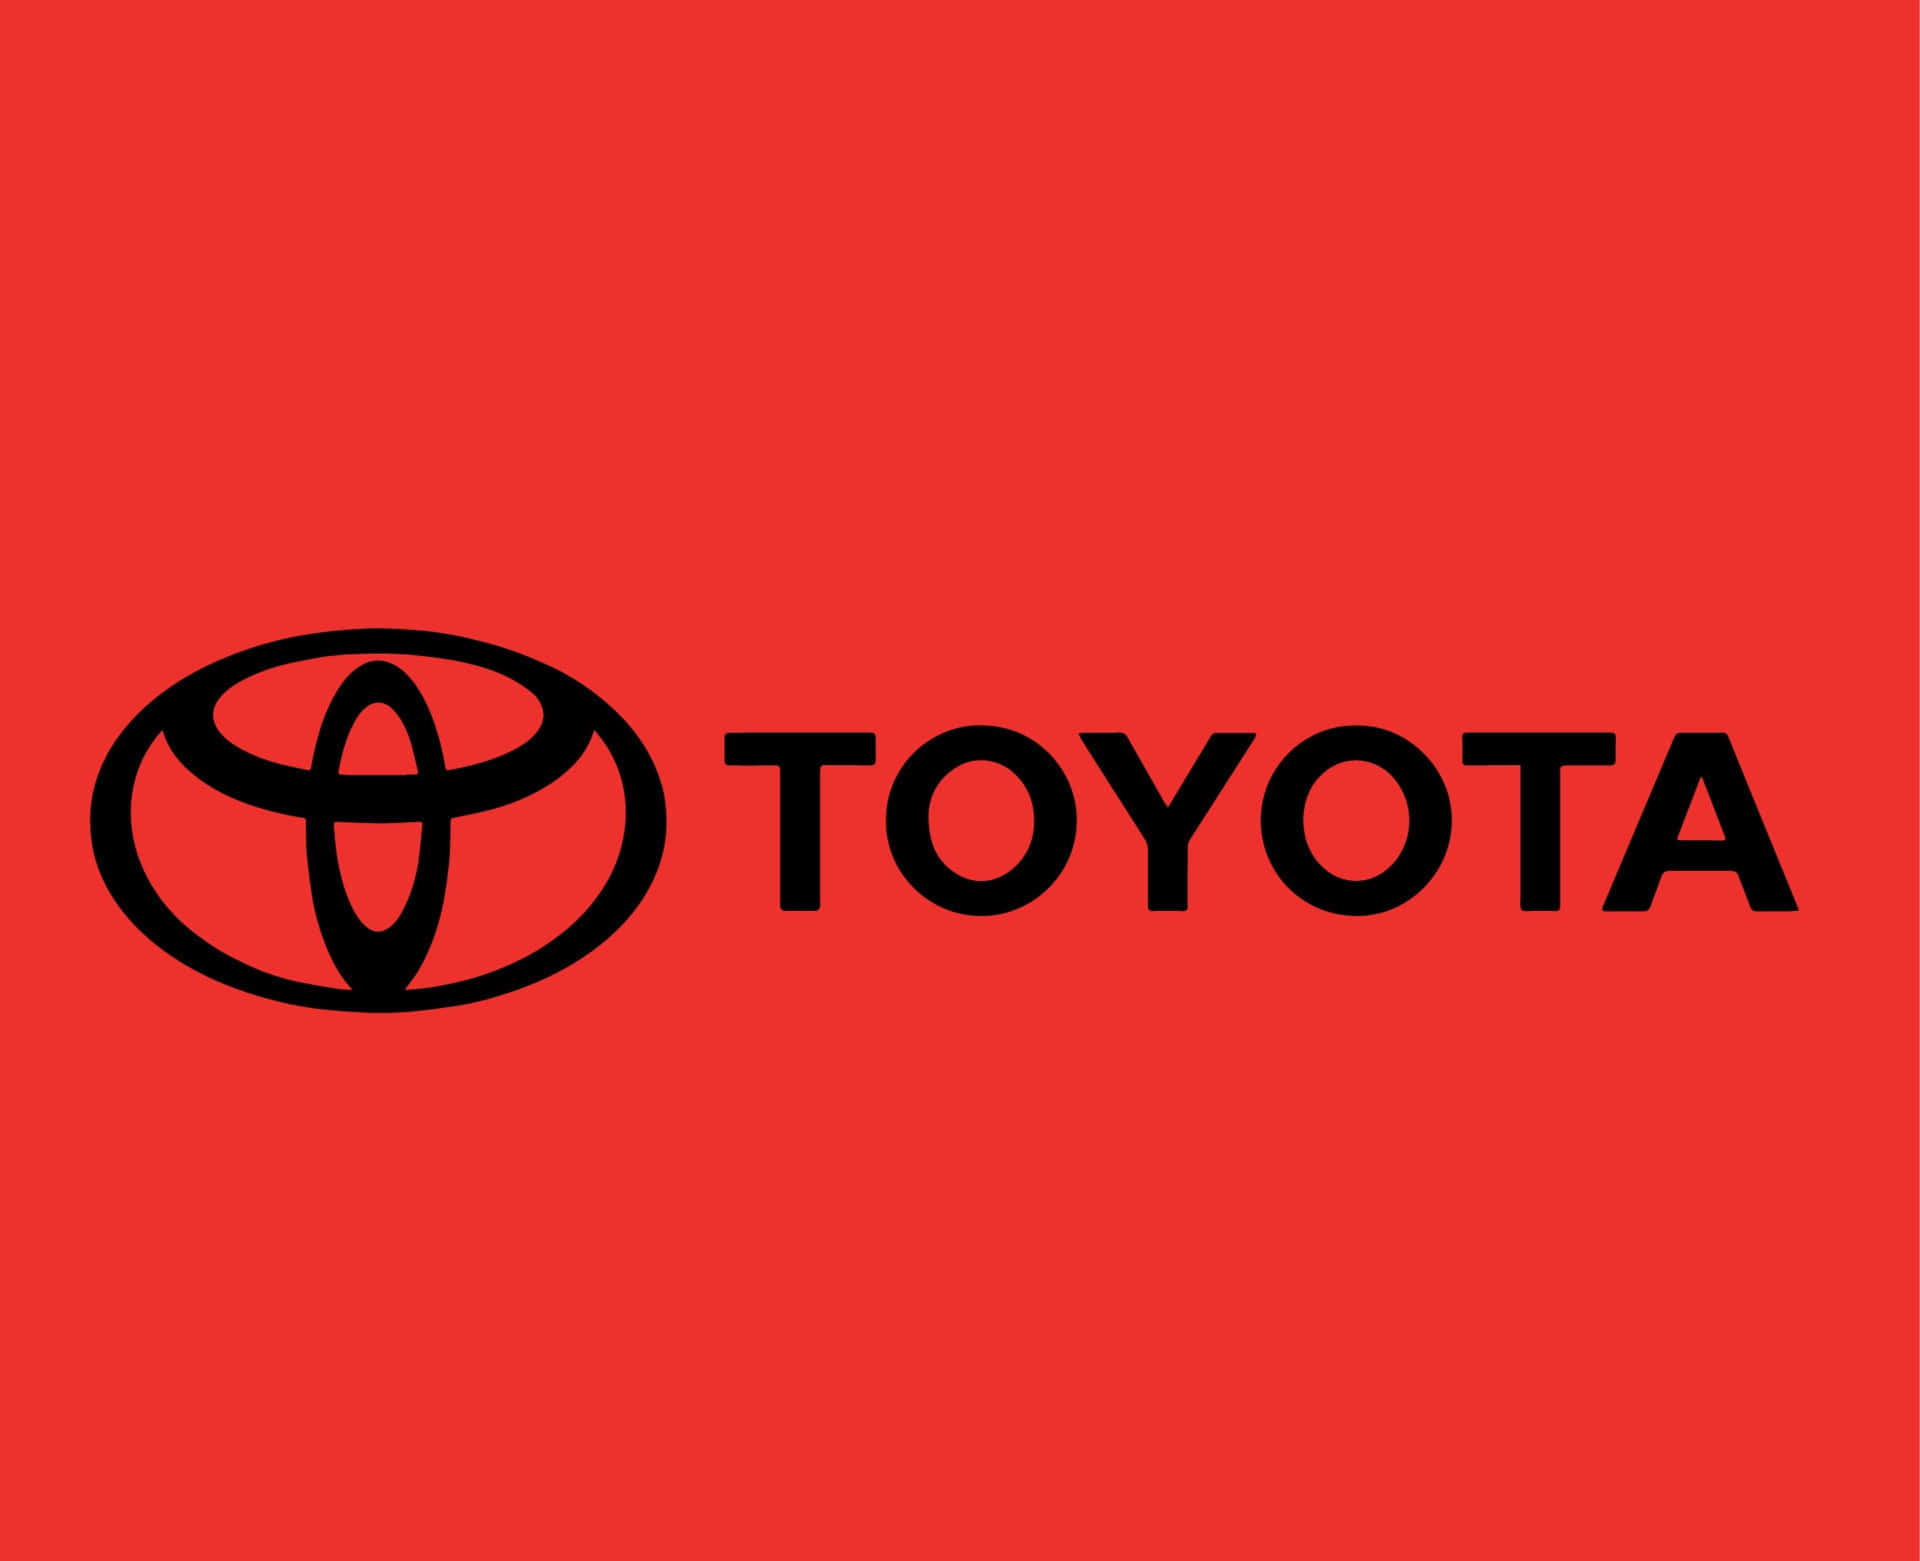 Toyotalogoet På En Rød Baggrund